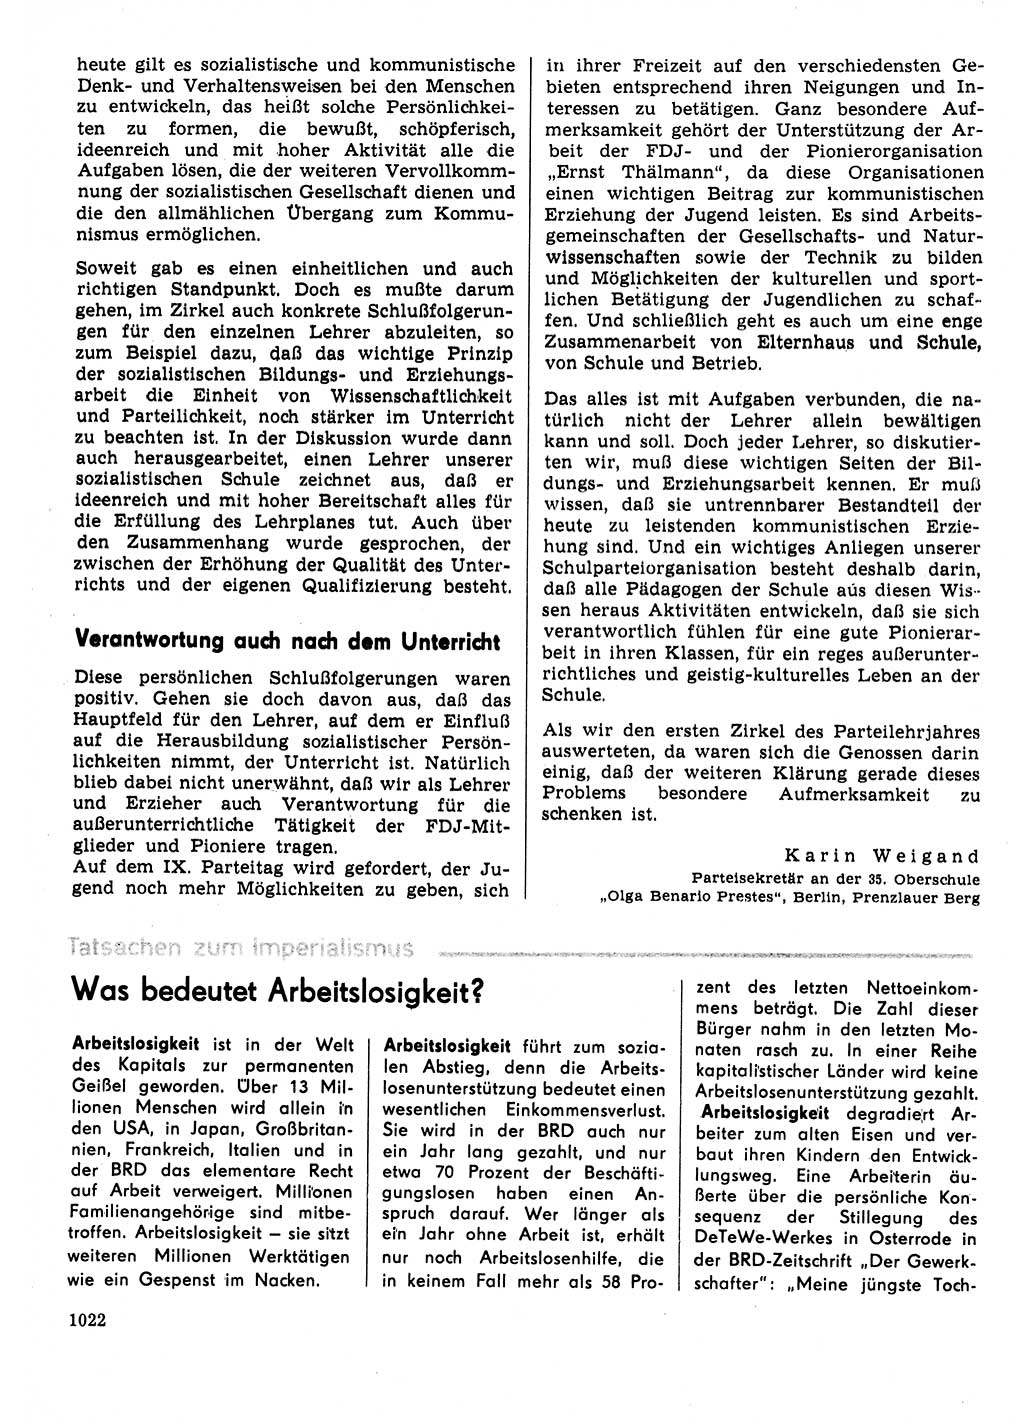 Neuer Weg (NW), Organ des Zentralkomitees (ZK) der SED (Sozialistische Einheitspartei Deutschlands) für Fragen des Parteilebens, 31. Jahrgang [Deutsche Demokratische Republik (DDR)] 1976, Seite 1022 (NW ZK SED DDR 1976, S. 1022)